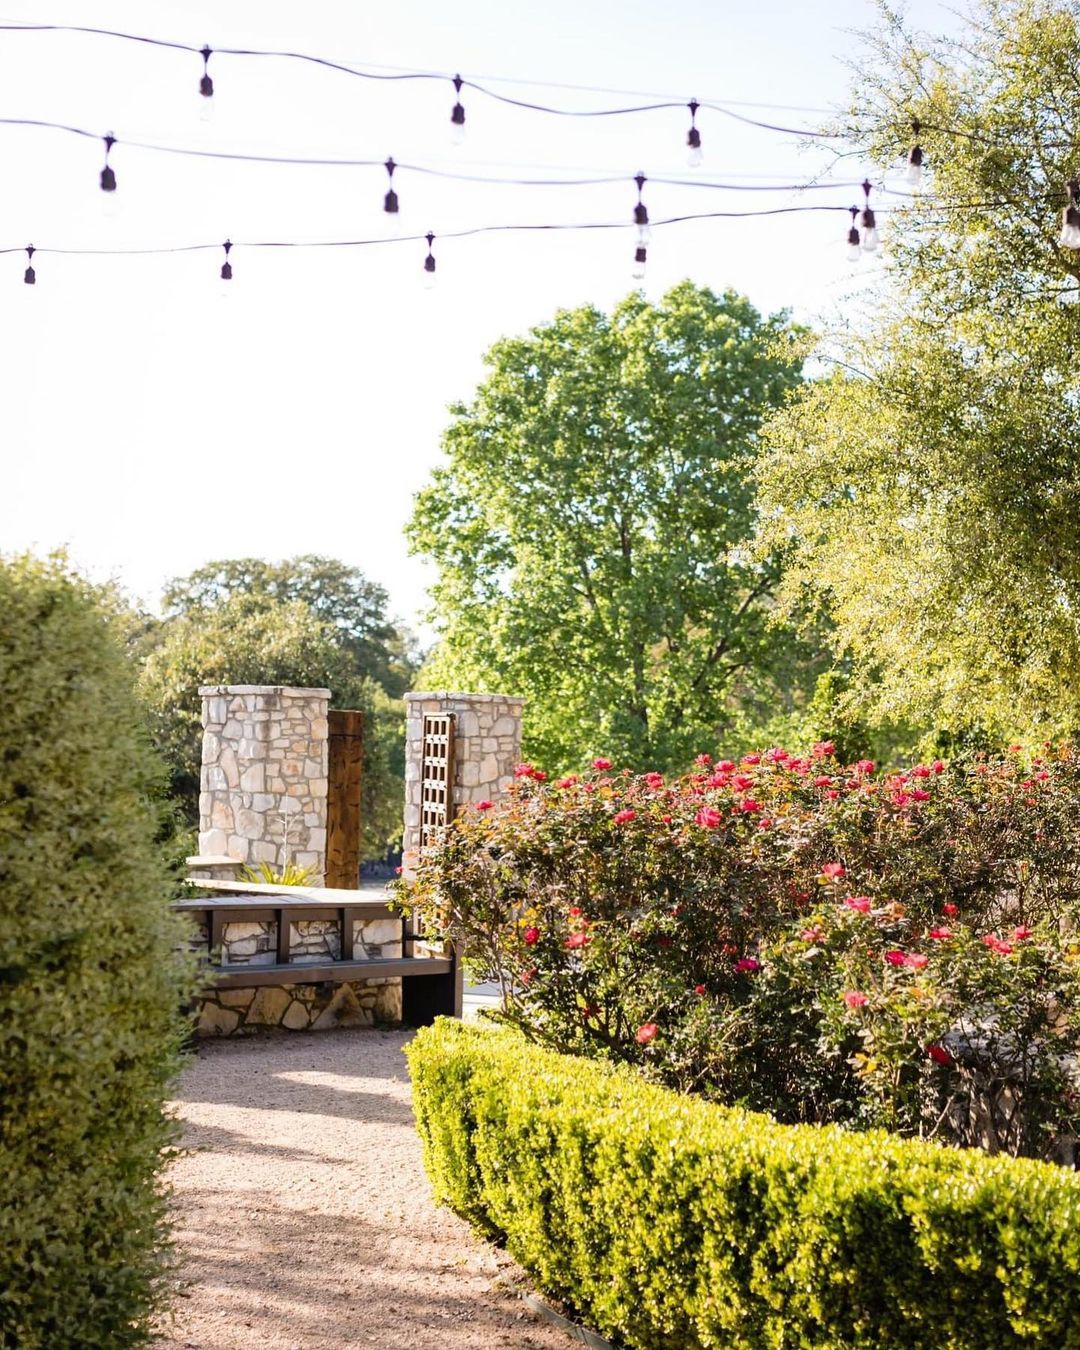 wedding venues in austin outdoor greenery flowers